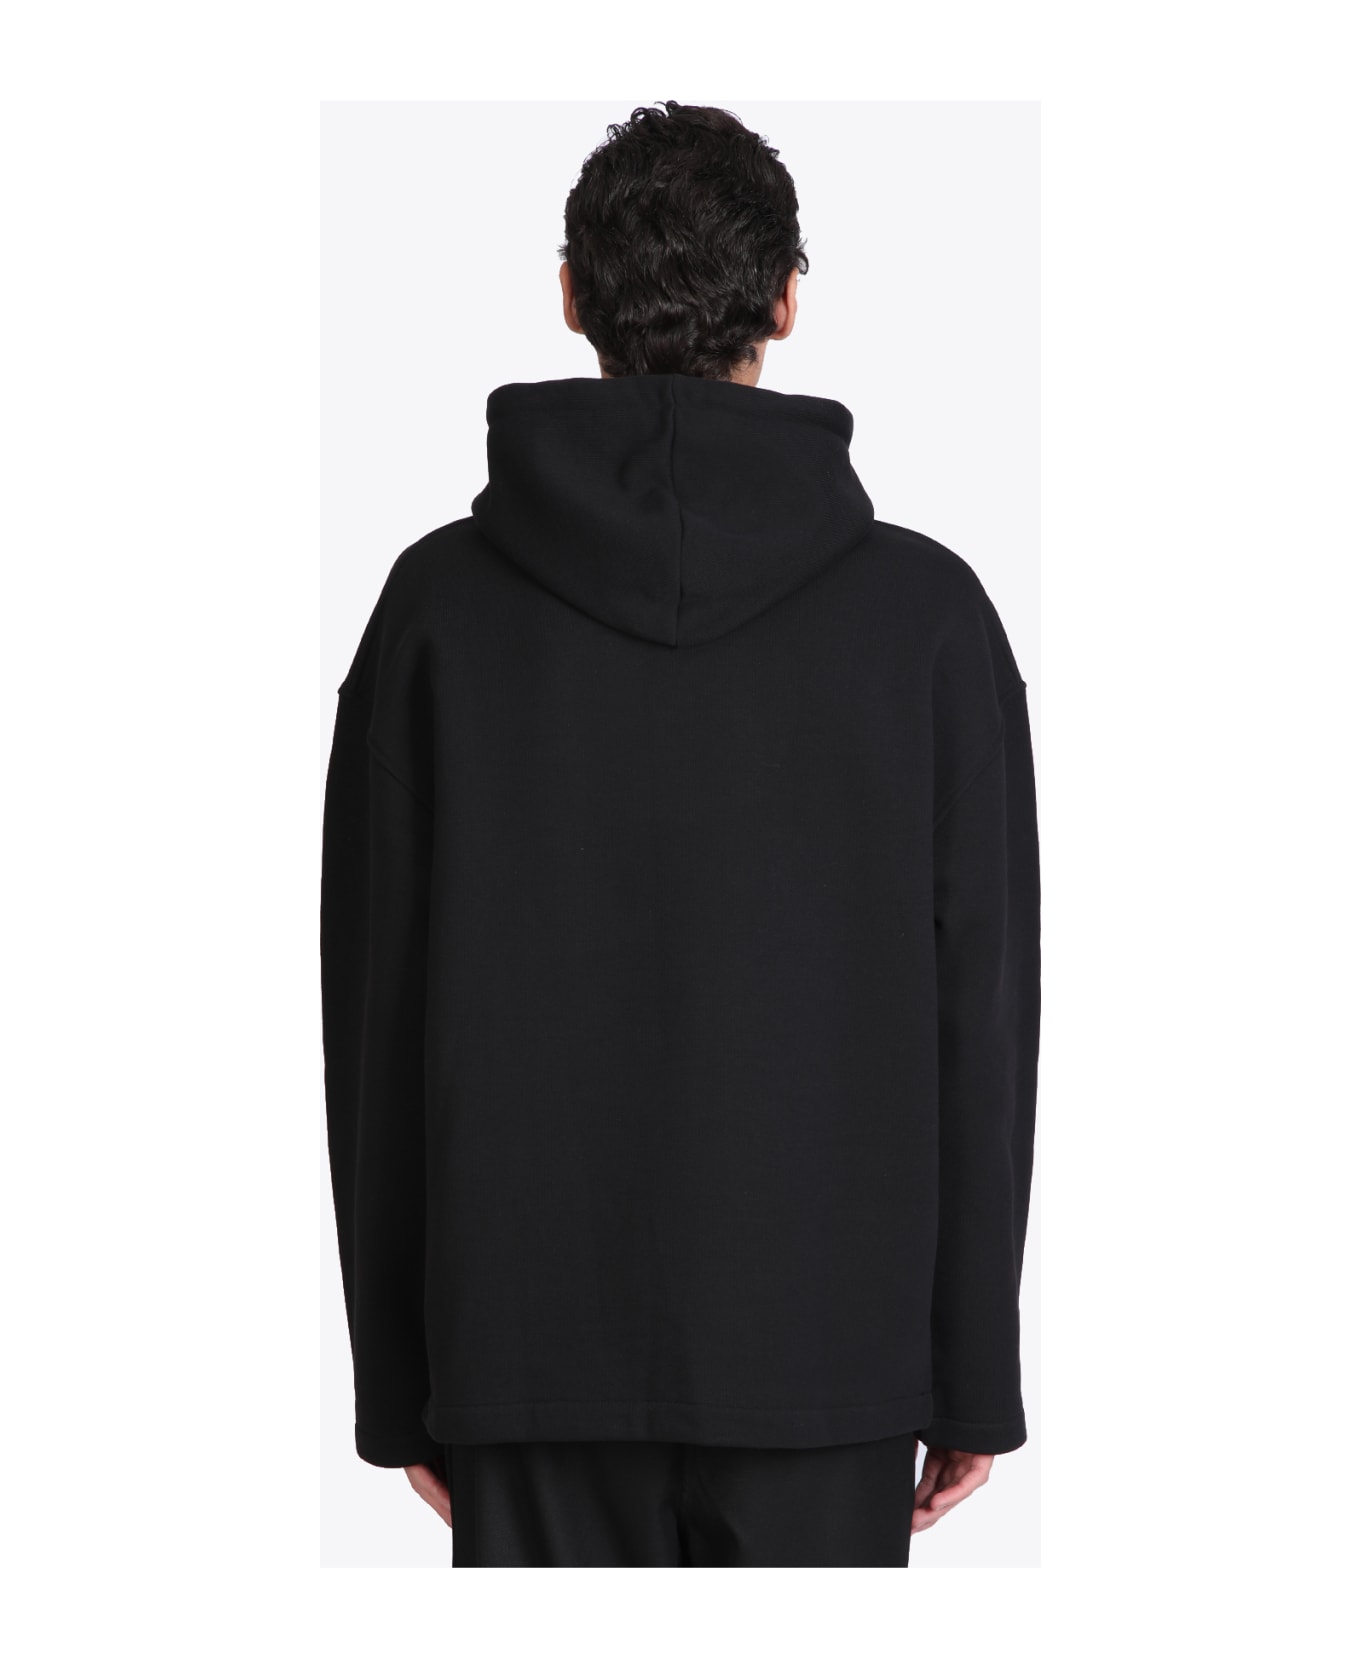 032c Oversized Mask Hoodie Black cotton hoodie with gas mask print - Oversized mask hoodie - Nero